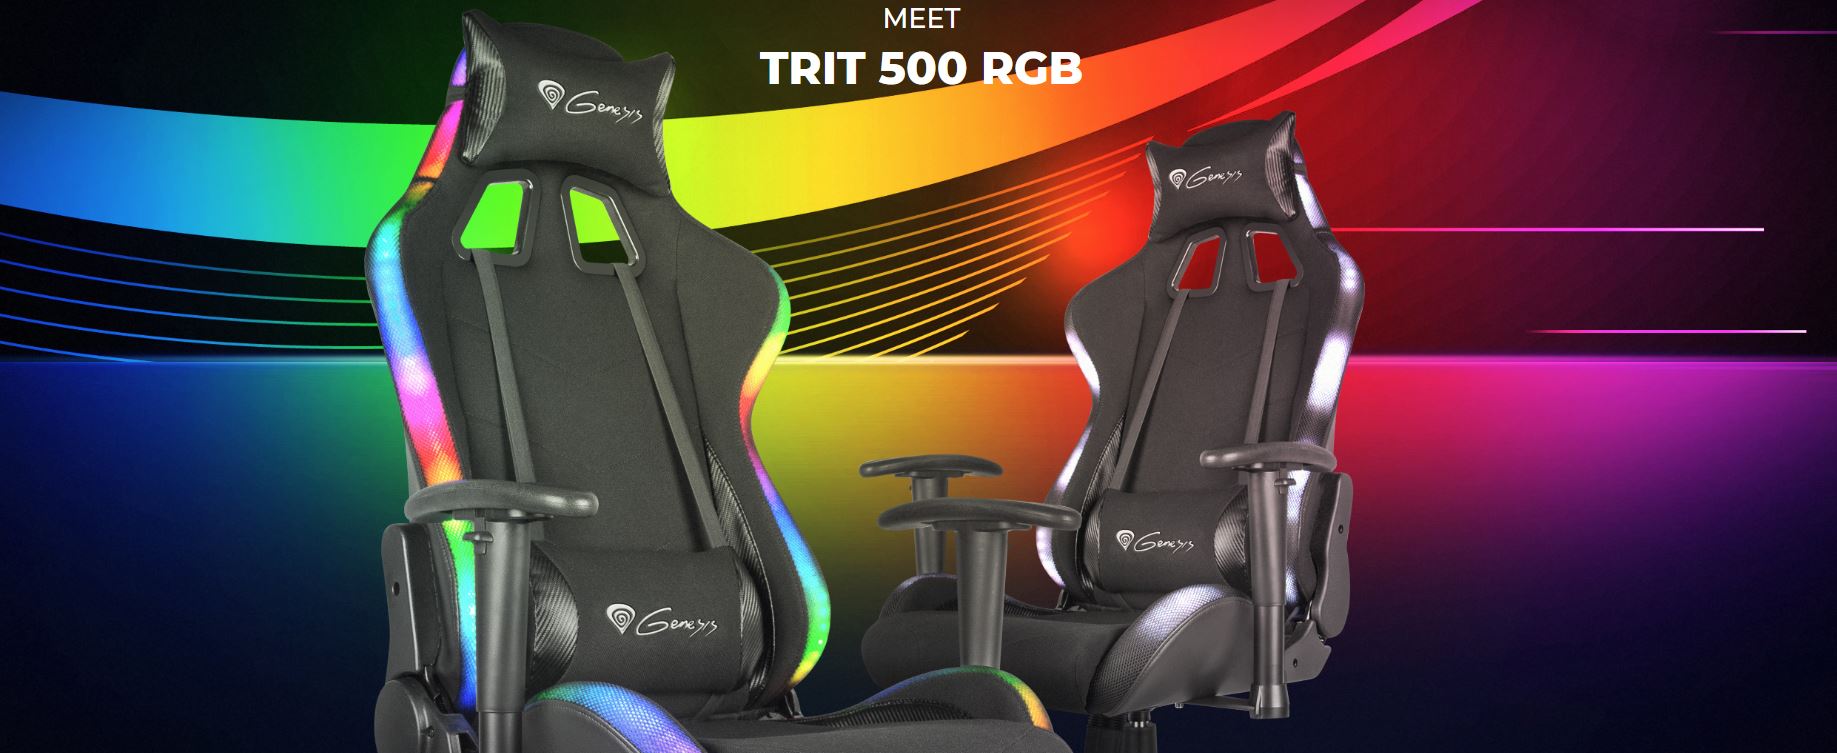 Genesis Trit 500 je nové herní křeslo s RGB podsvícením